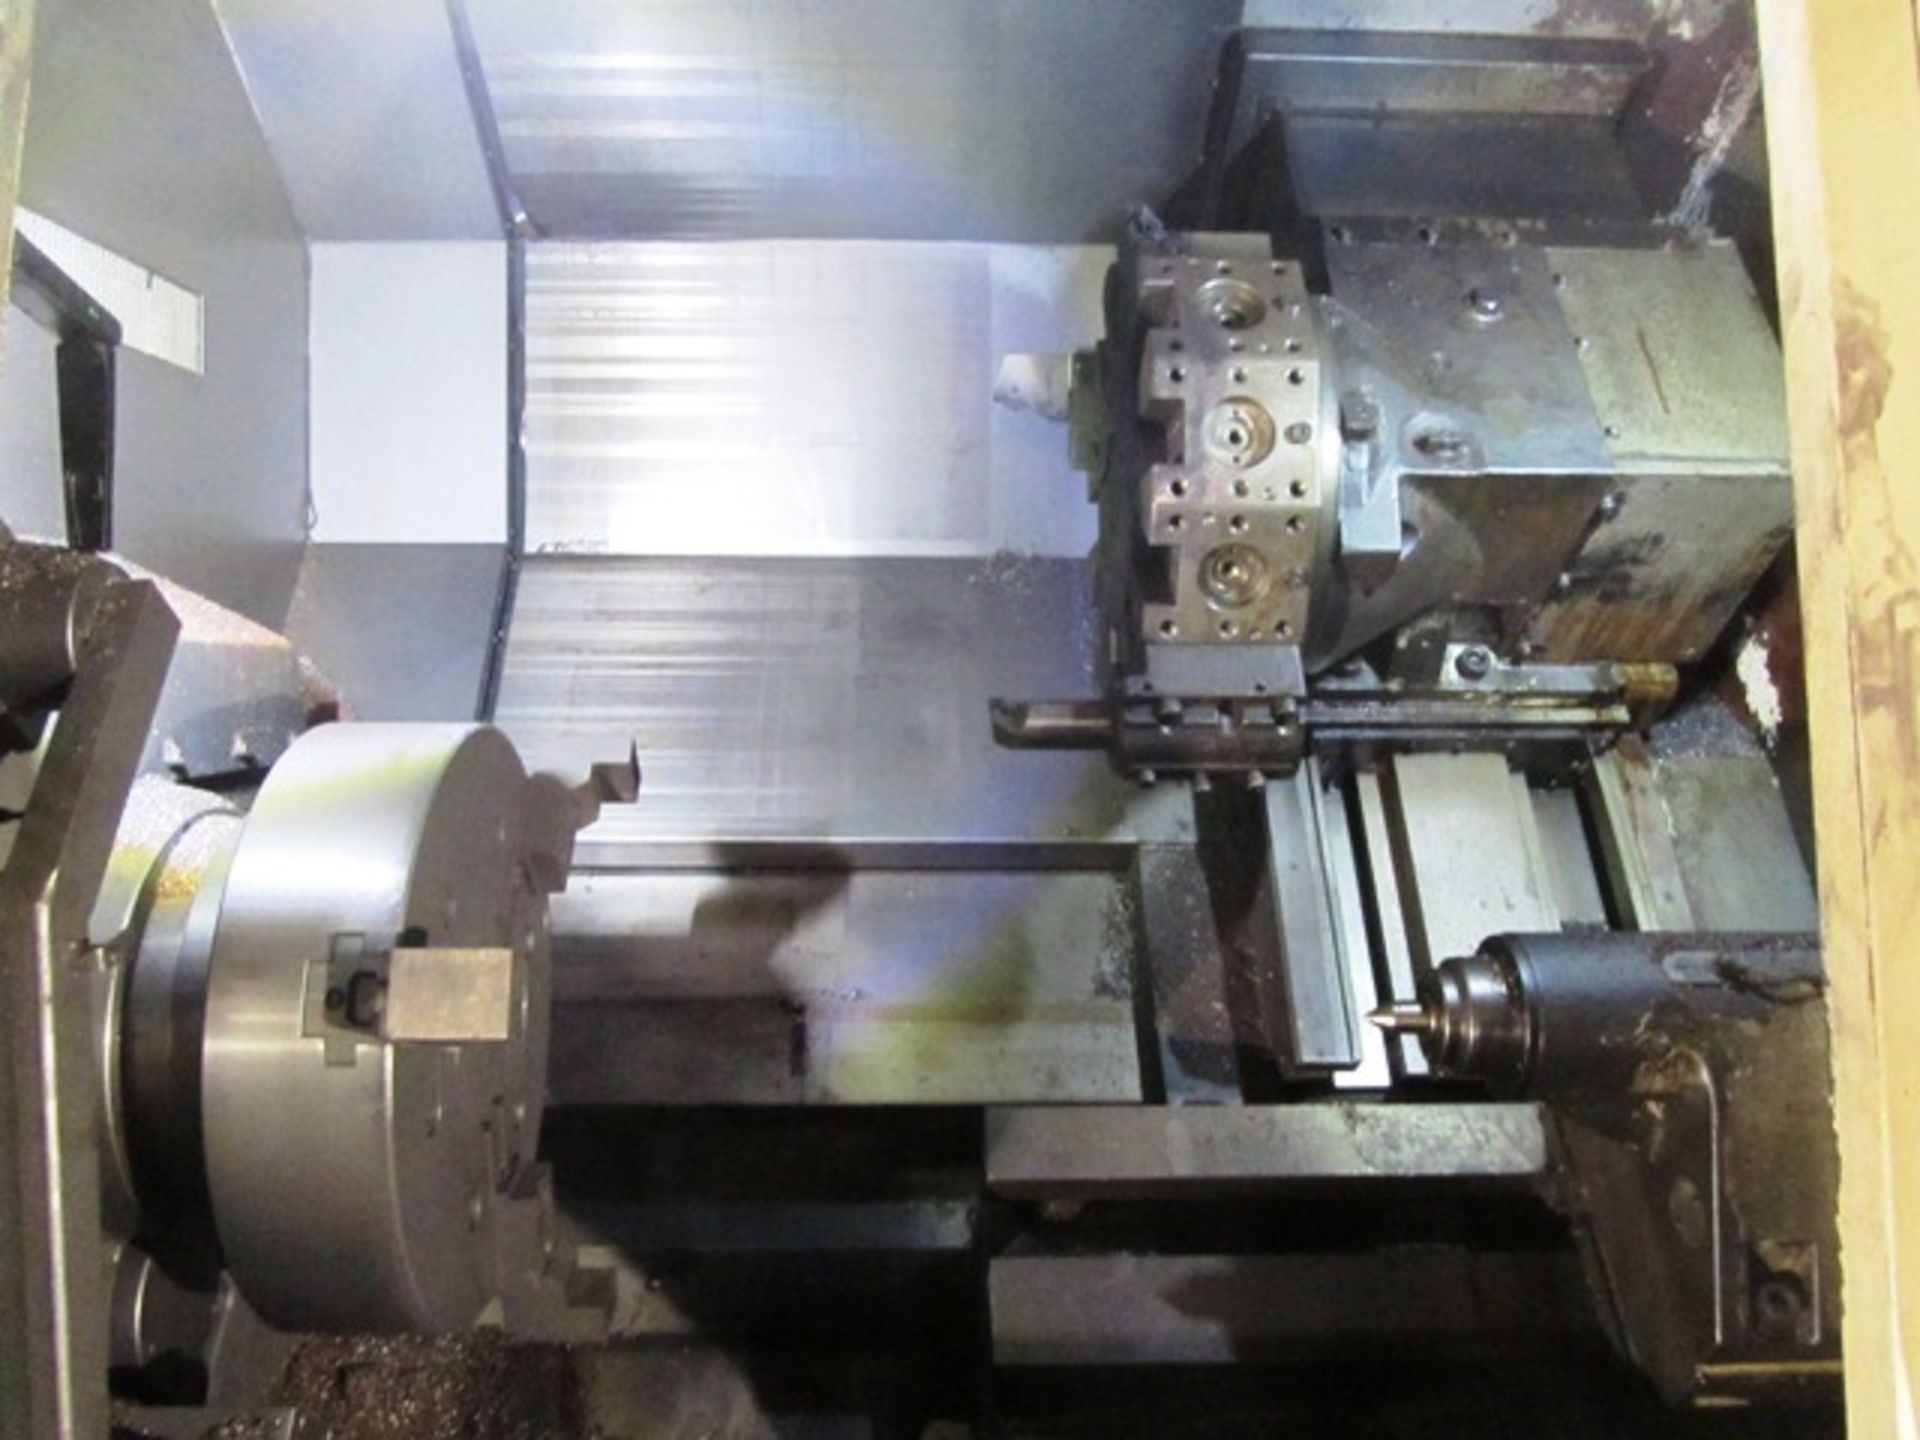 Mori Seiki SL-65 CNC Horizontal Turning Center - Image 4 of 4